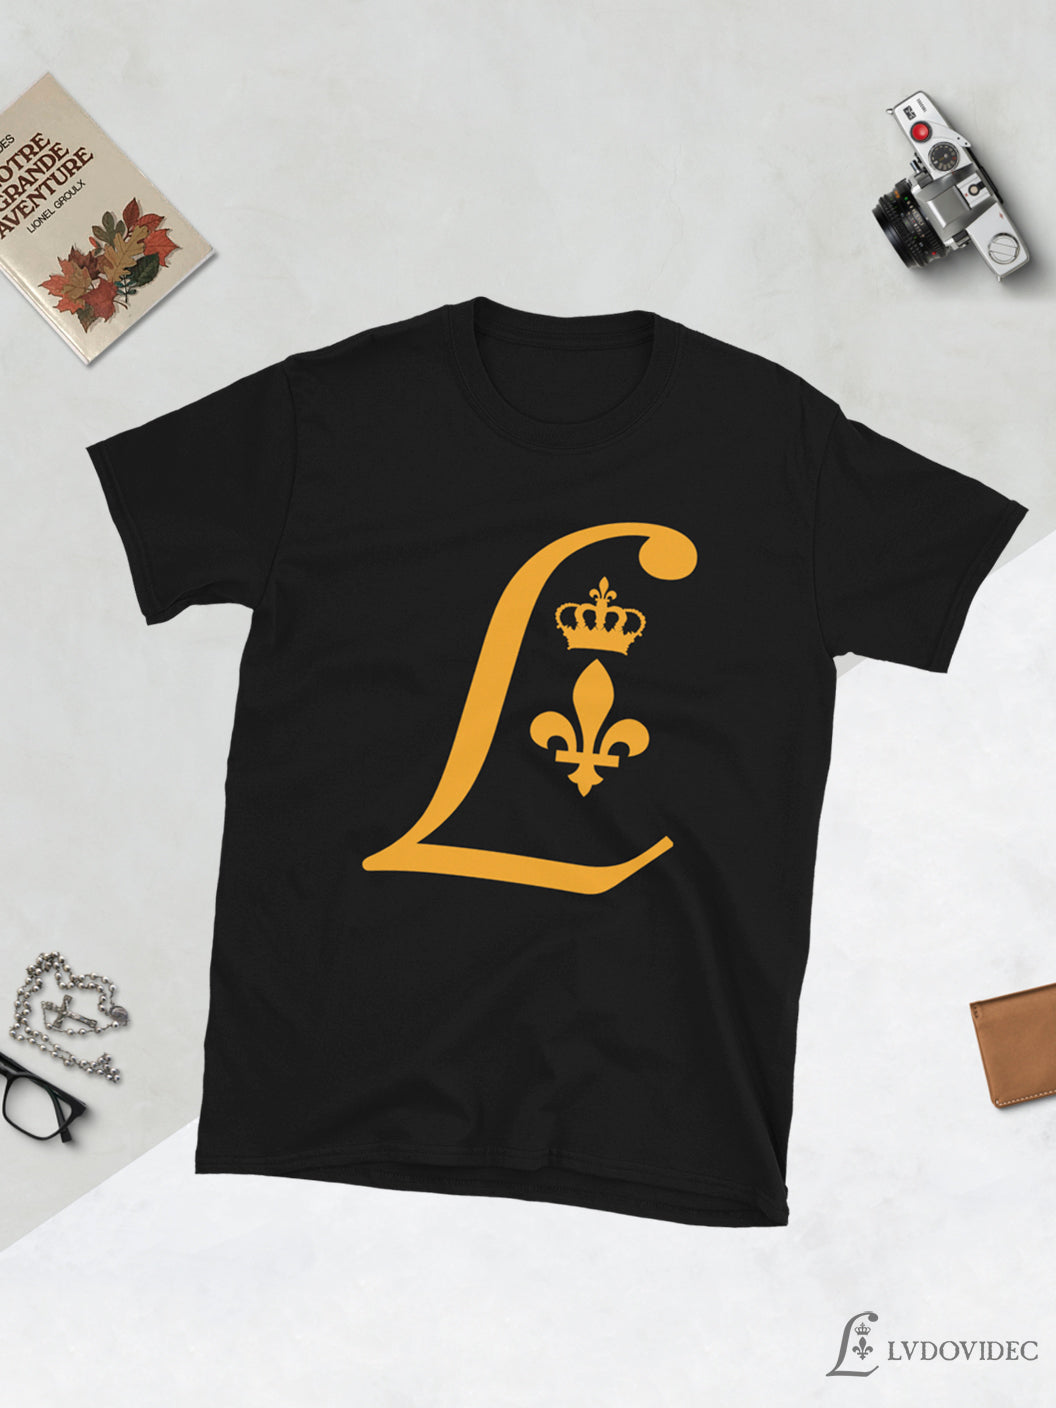 T-shirt Unisexe - Ludovidec